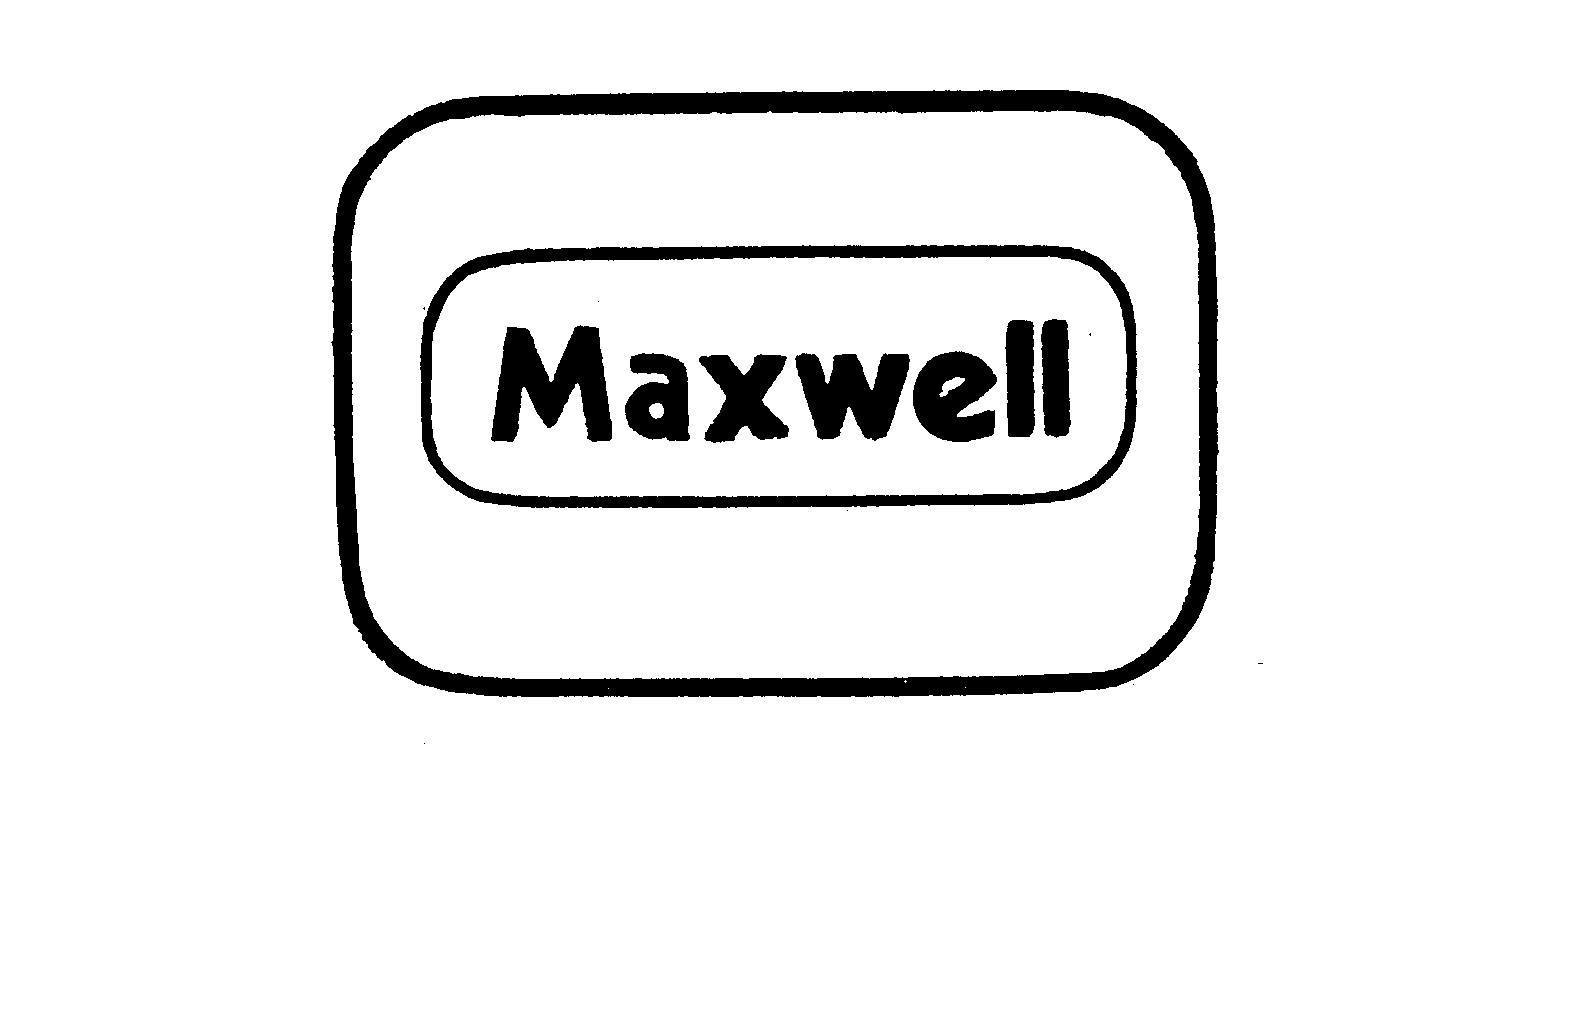  MAXWELL